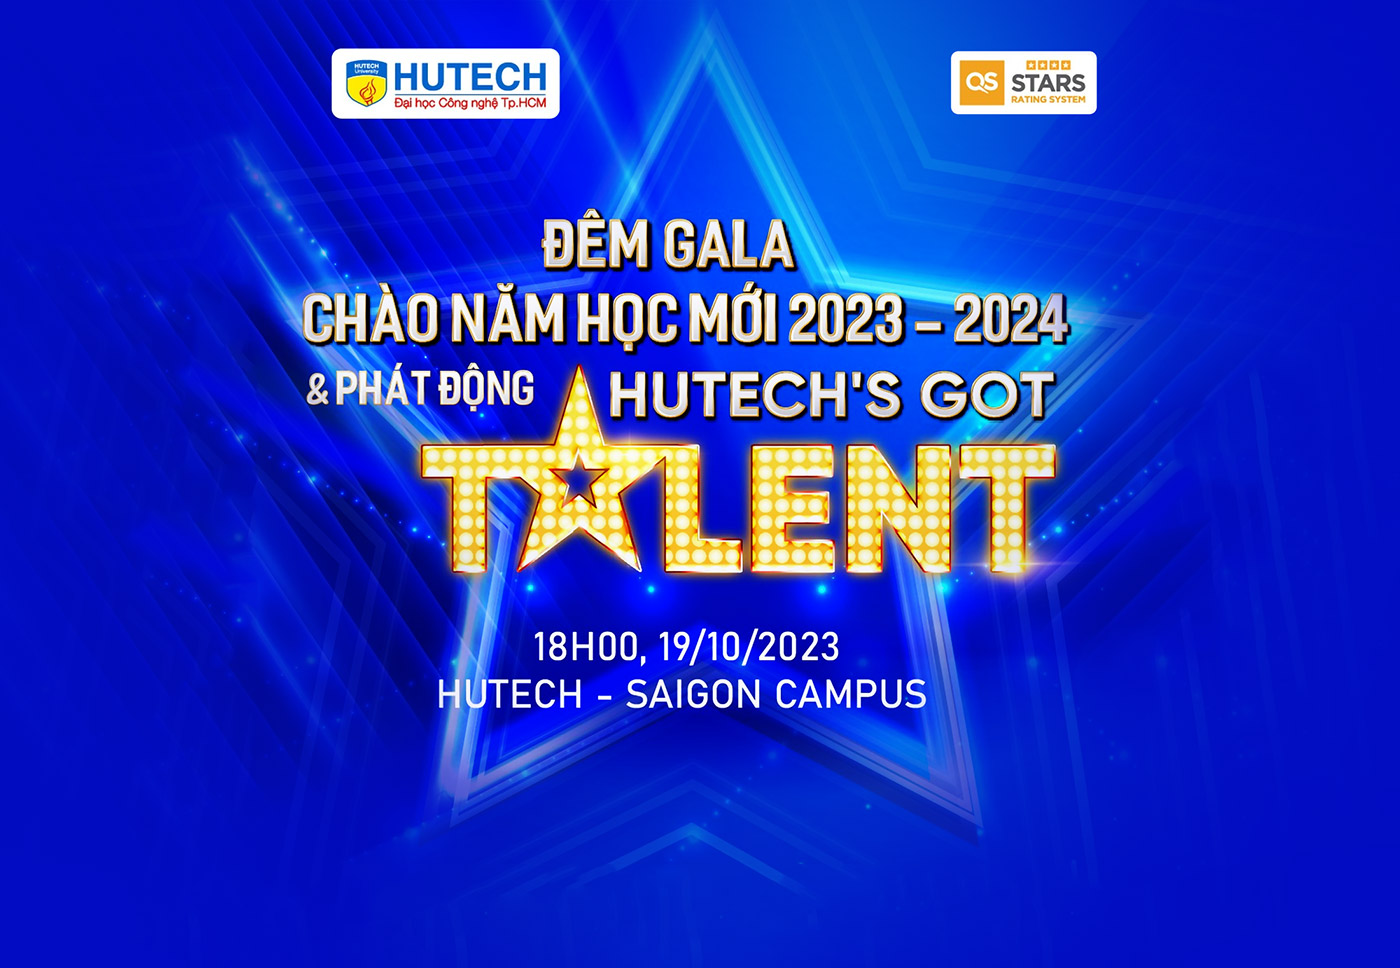 HUTECHs Got Talent 2024 chính thức phát động, tài năng trẻ sẵn sàng tỏa sáng - ảnh 1